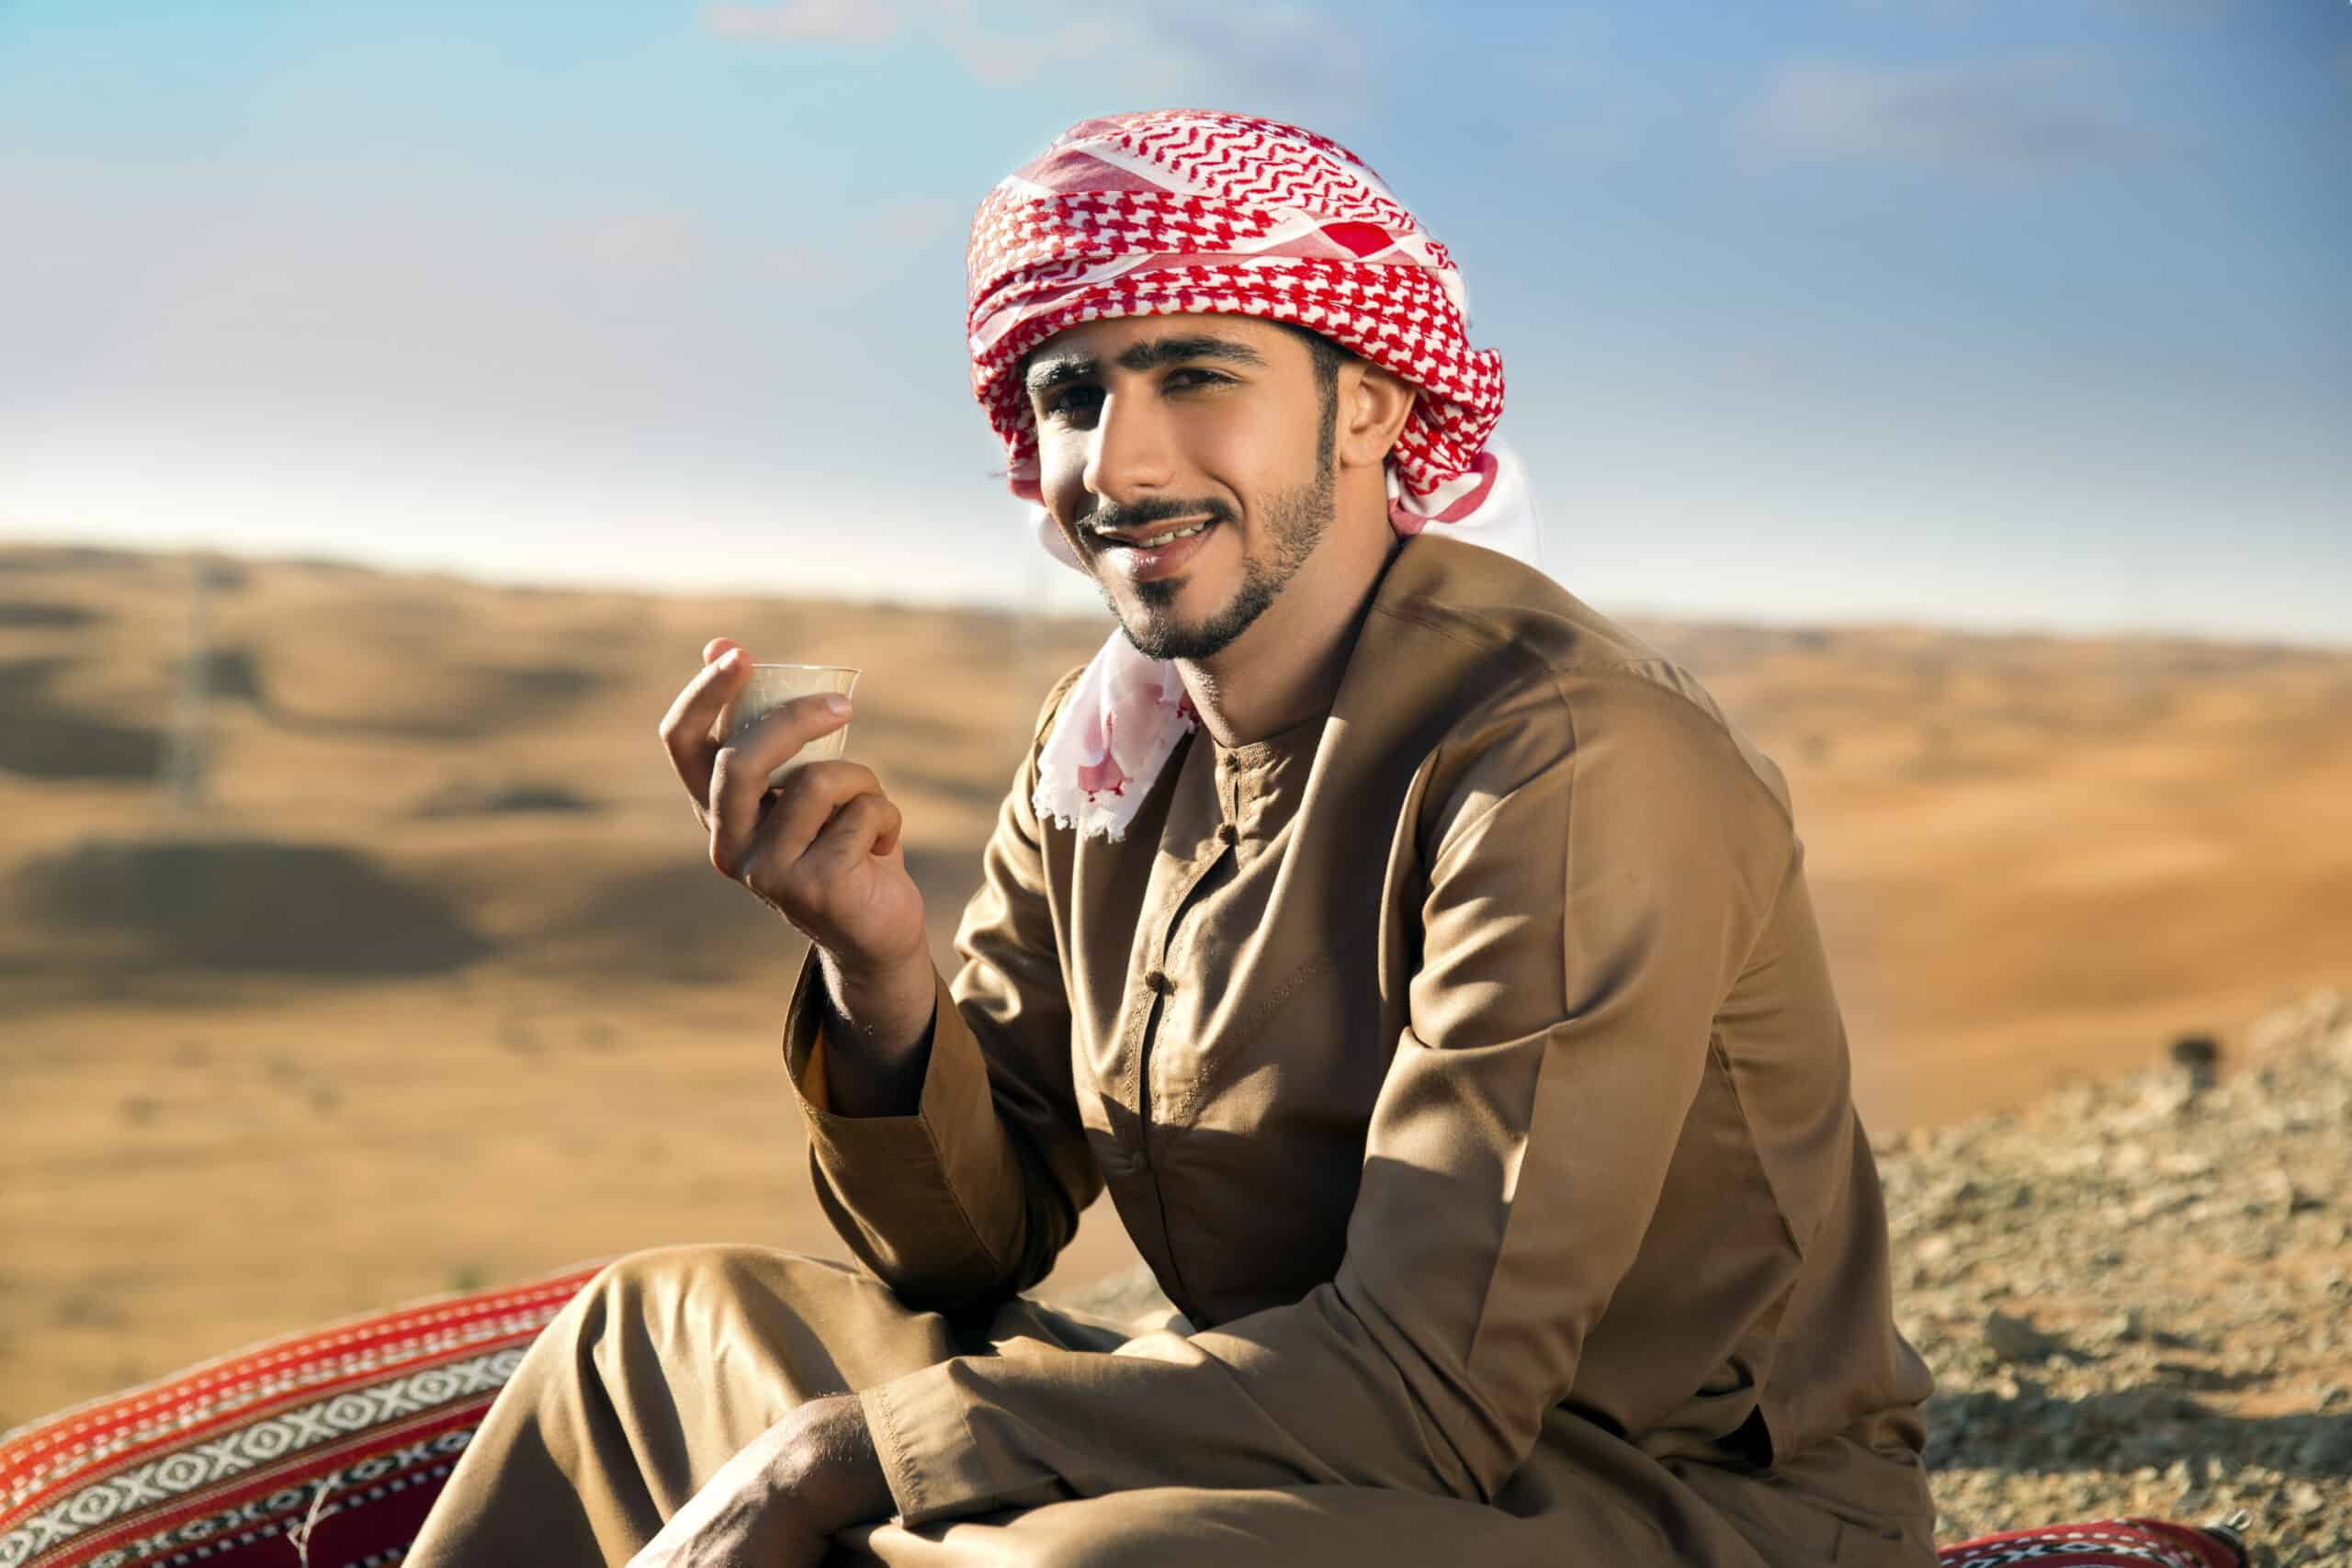 Ein lächelnder Mann in traditioneller nahöstlicher Kleidung sitzt auf einem gemusterten Teppich in einer Wüstenlandschaft und hält eine kleine Tasse Kaffee. © Fotografie Tomas Rodriguez